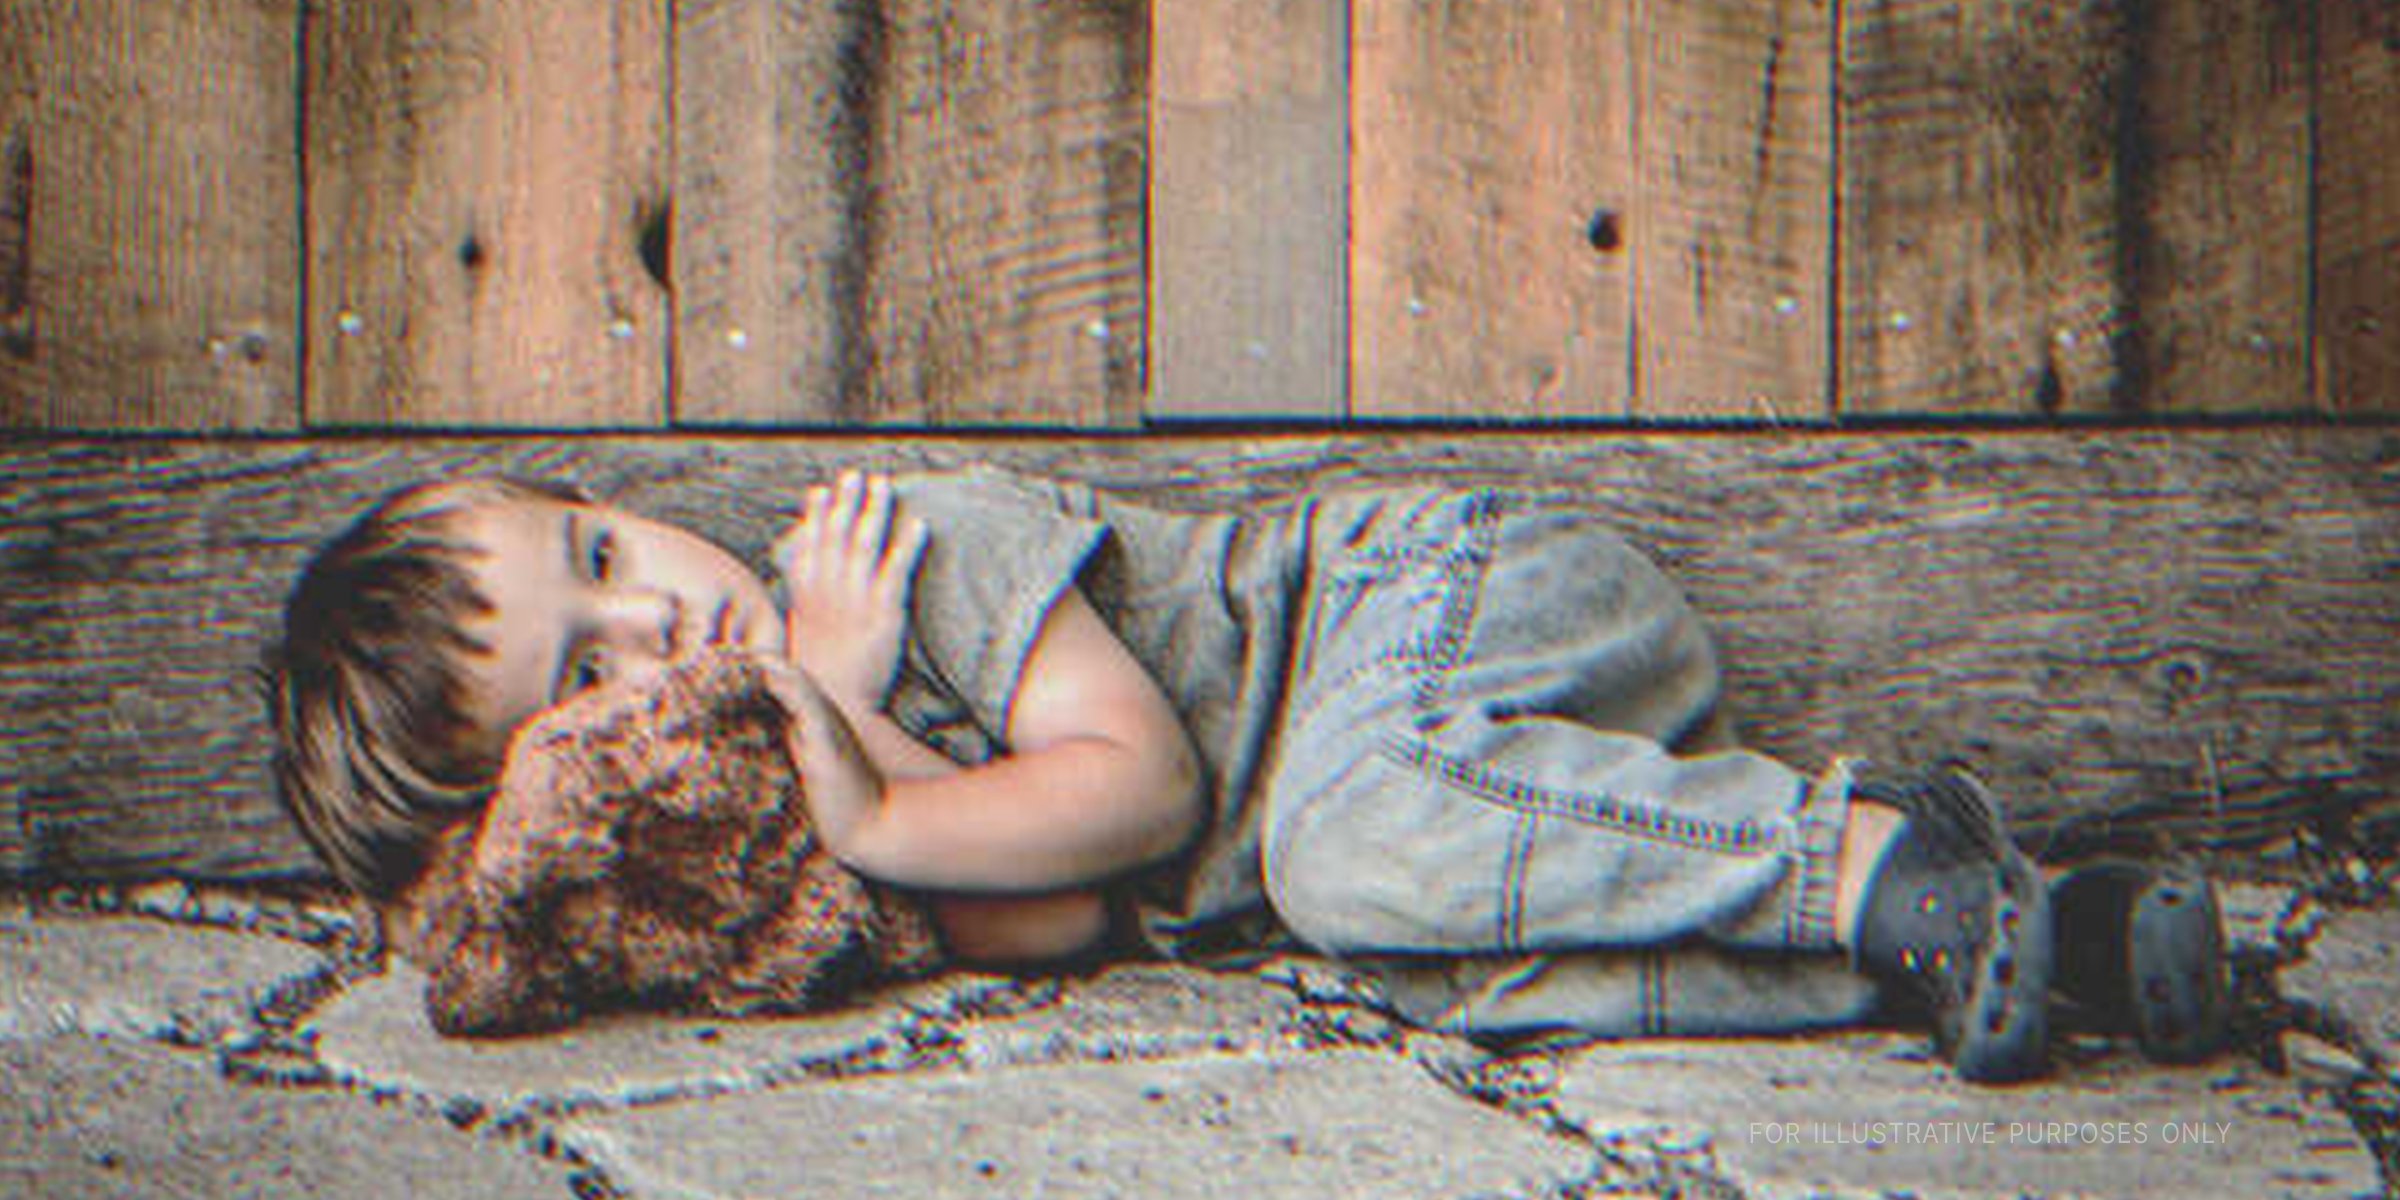 Trauriger kleiner Junge liegt auf dem Bürgersteig | Quelle: Shutterstock